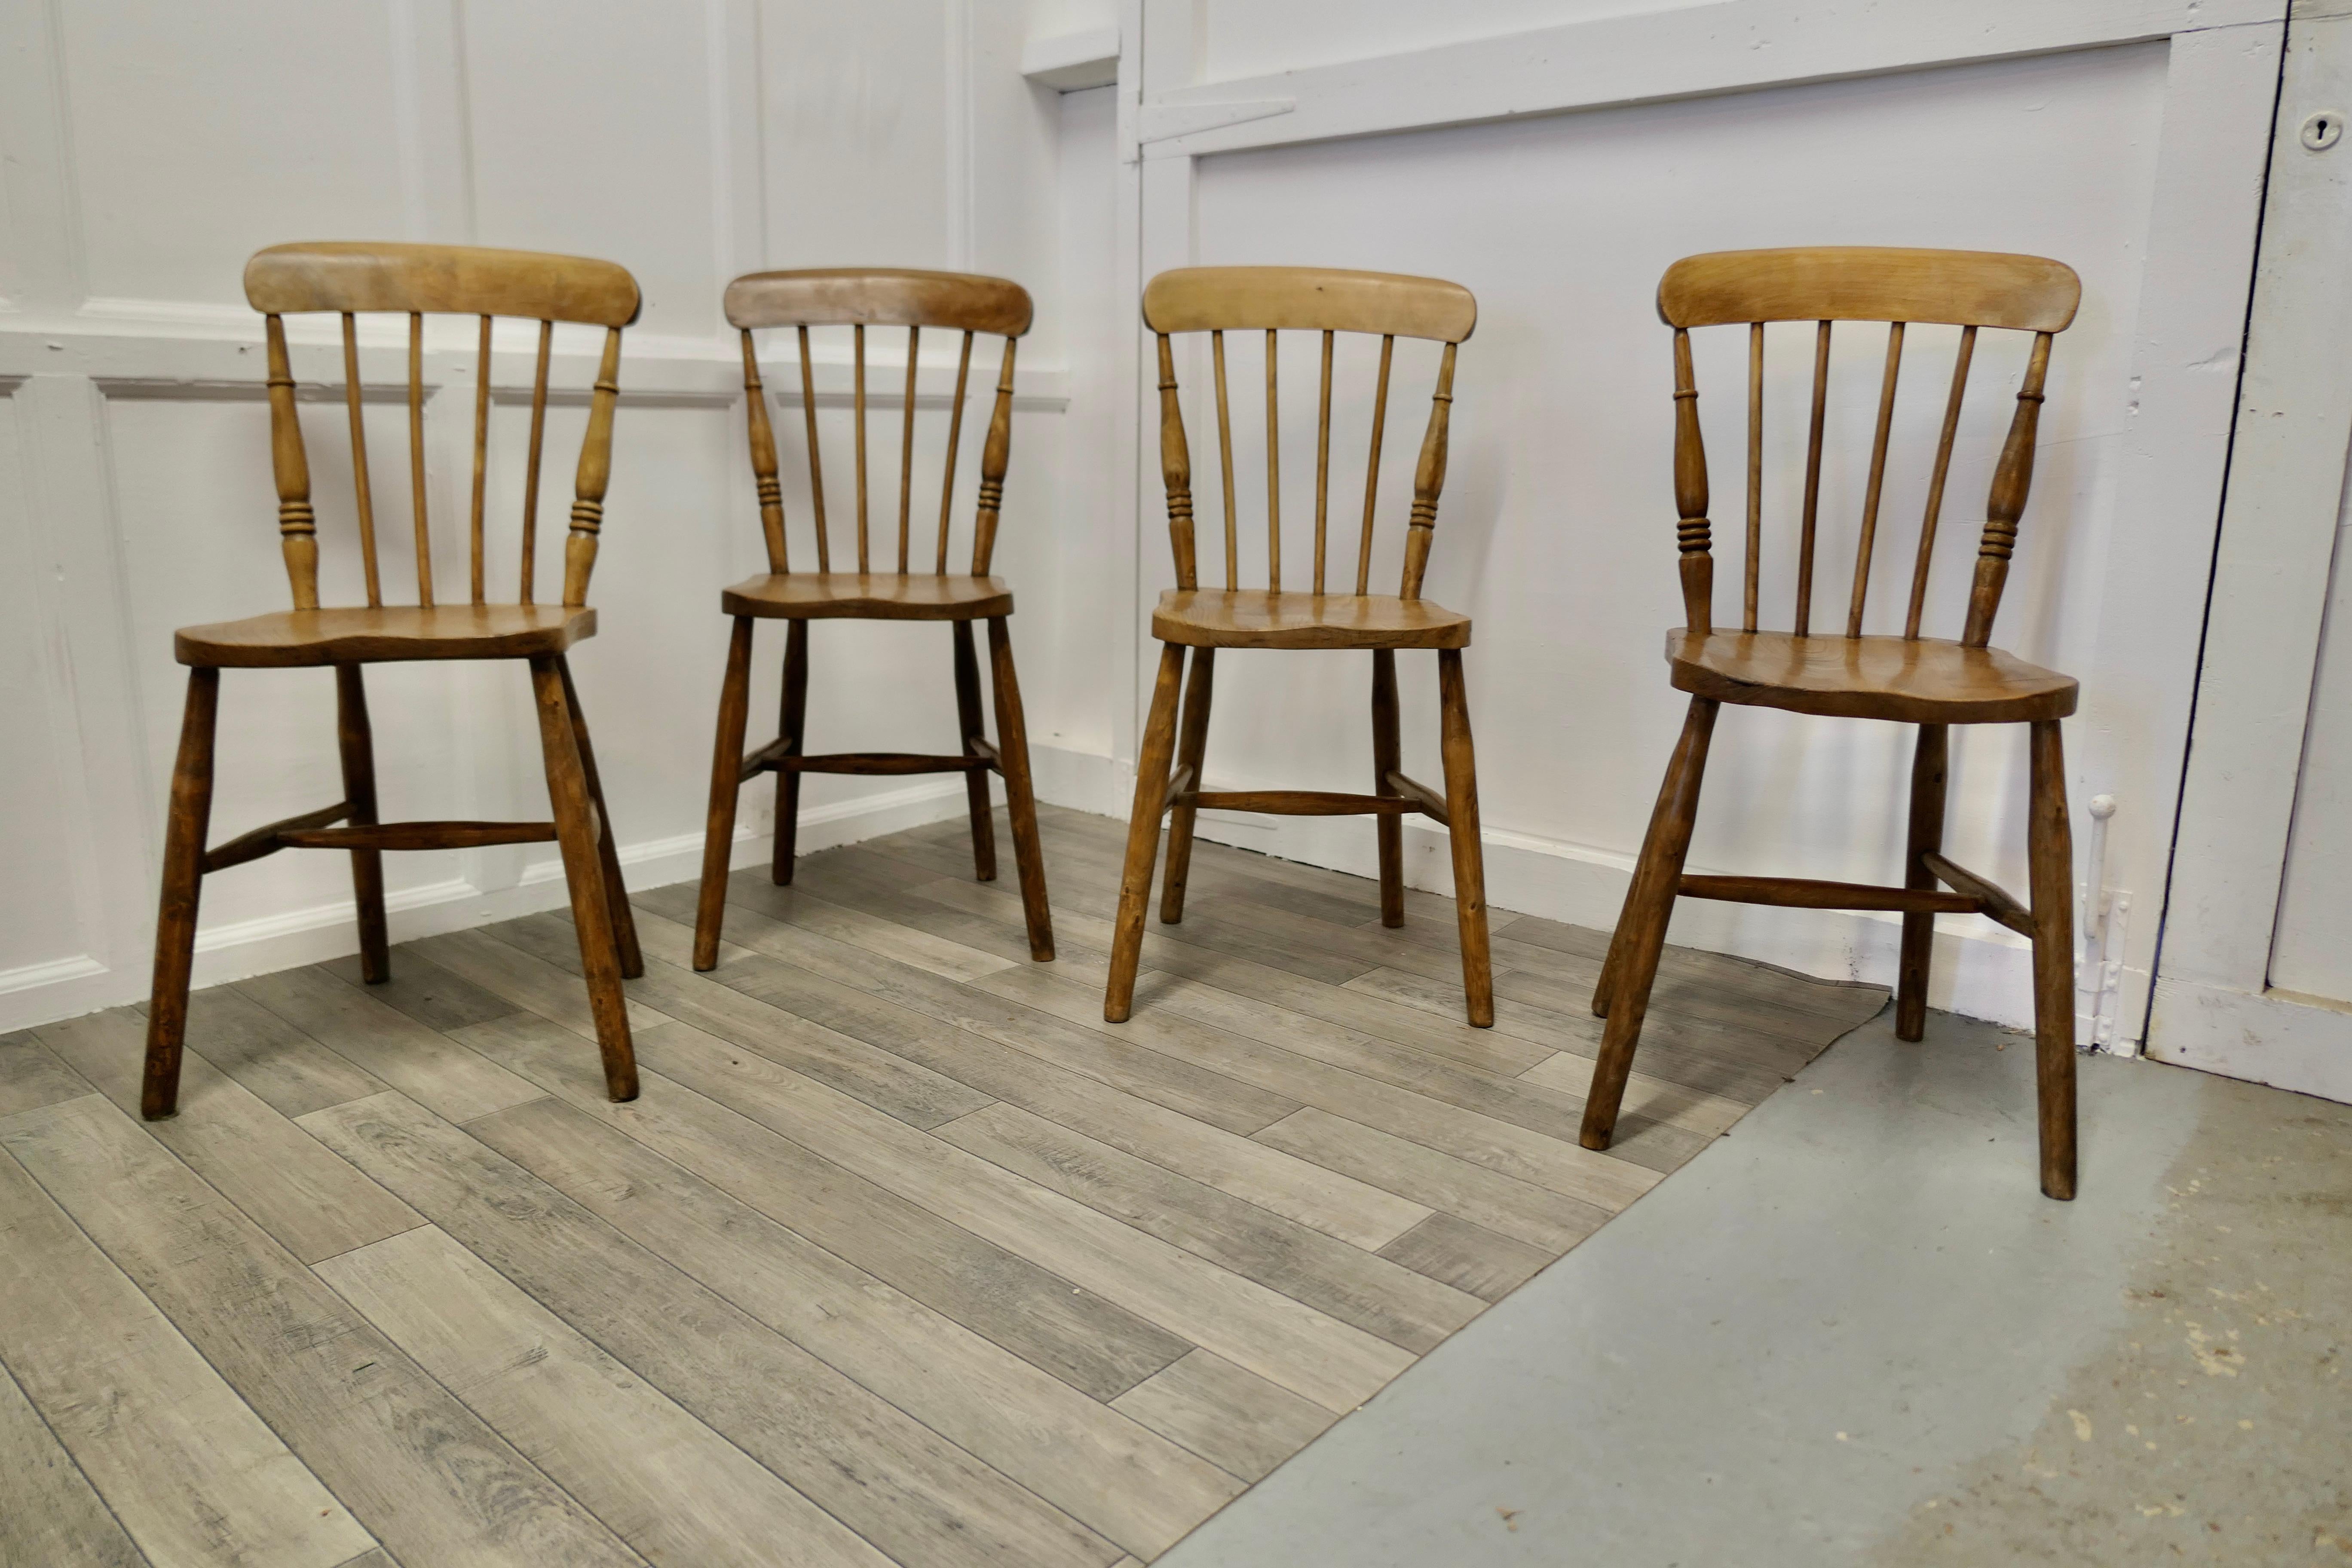 Ensemble de 4 chaises de cuisine en hêtre et orme avec dossier en bois.


Les chaises sont d'un design classique et sont fabriquées traditionnellement en bois massif. Elles ont un dossier courbé dans le style traditionnel avec des fuseaux. 
Il